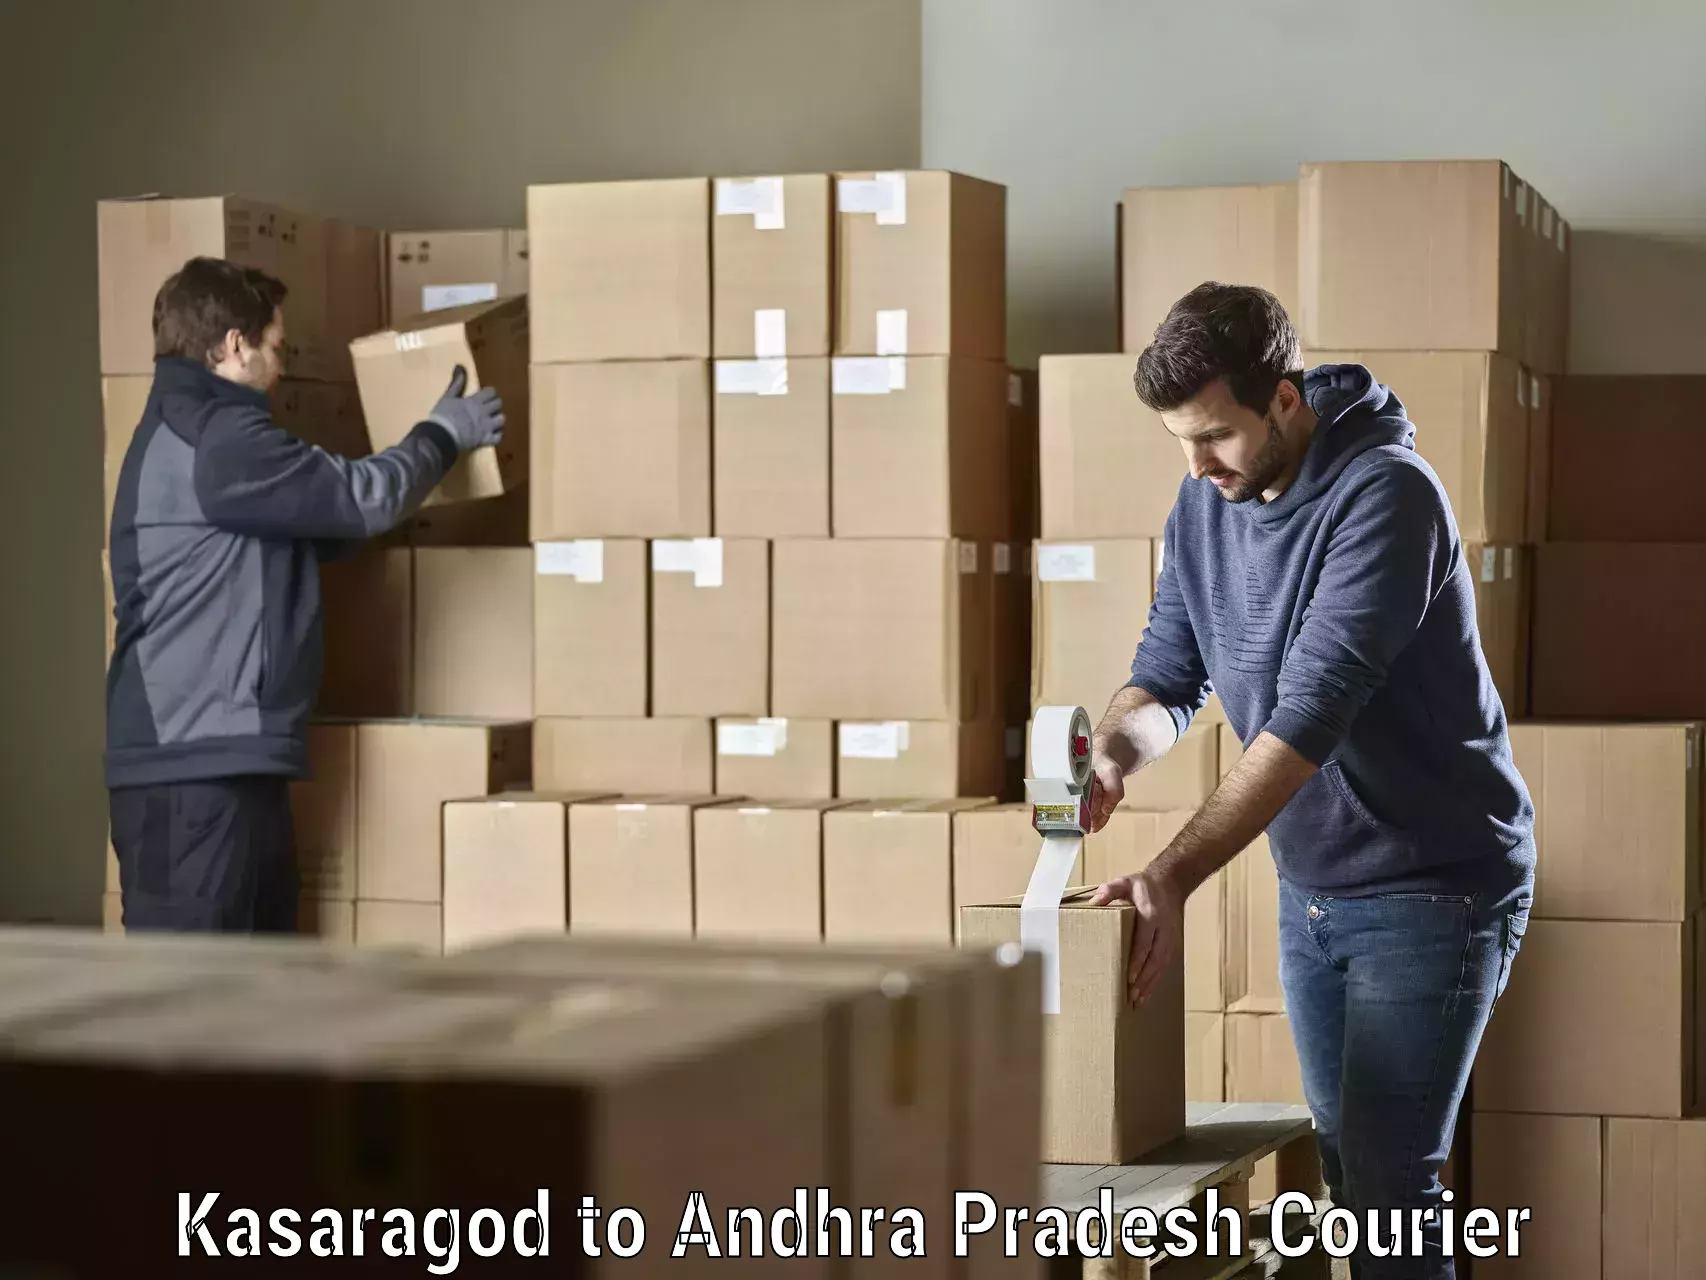 Professional courier handling Kasaragod to Tirupati